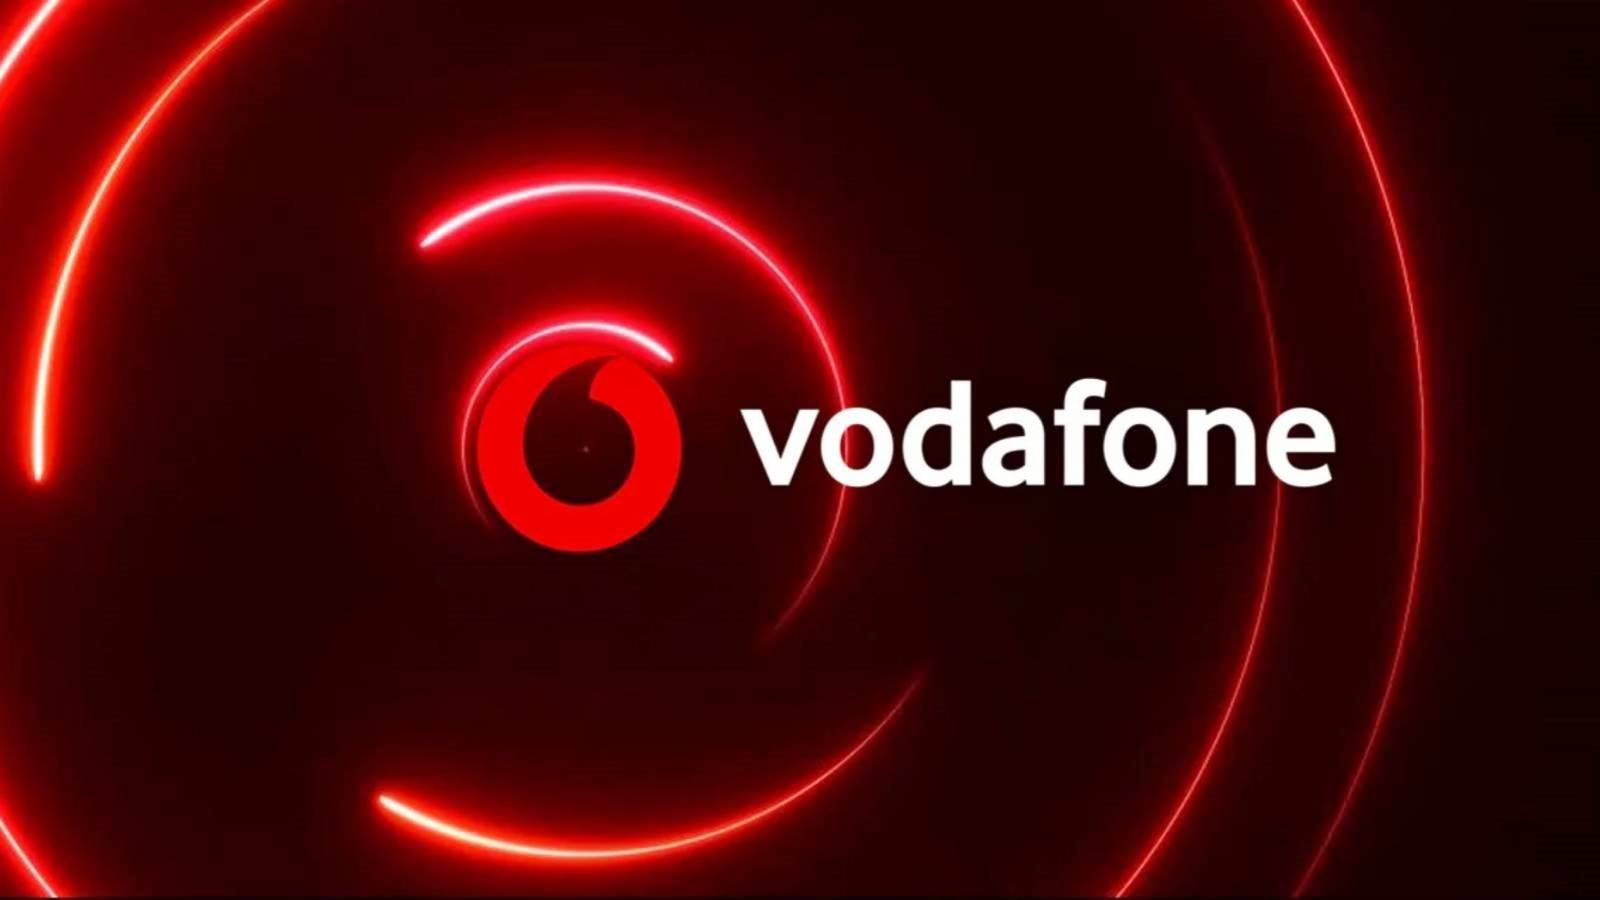 Décision d'annonce IMPORTANTE de Vodafone Passez de bonnes vacances